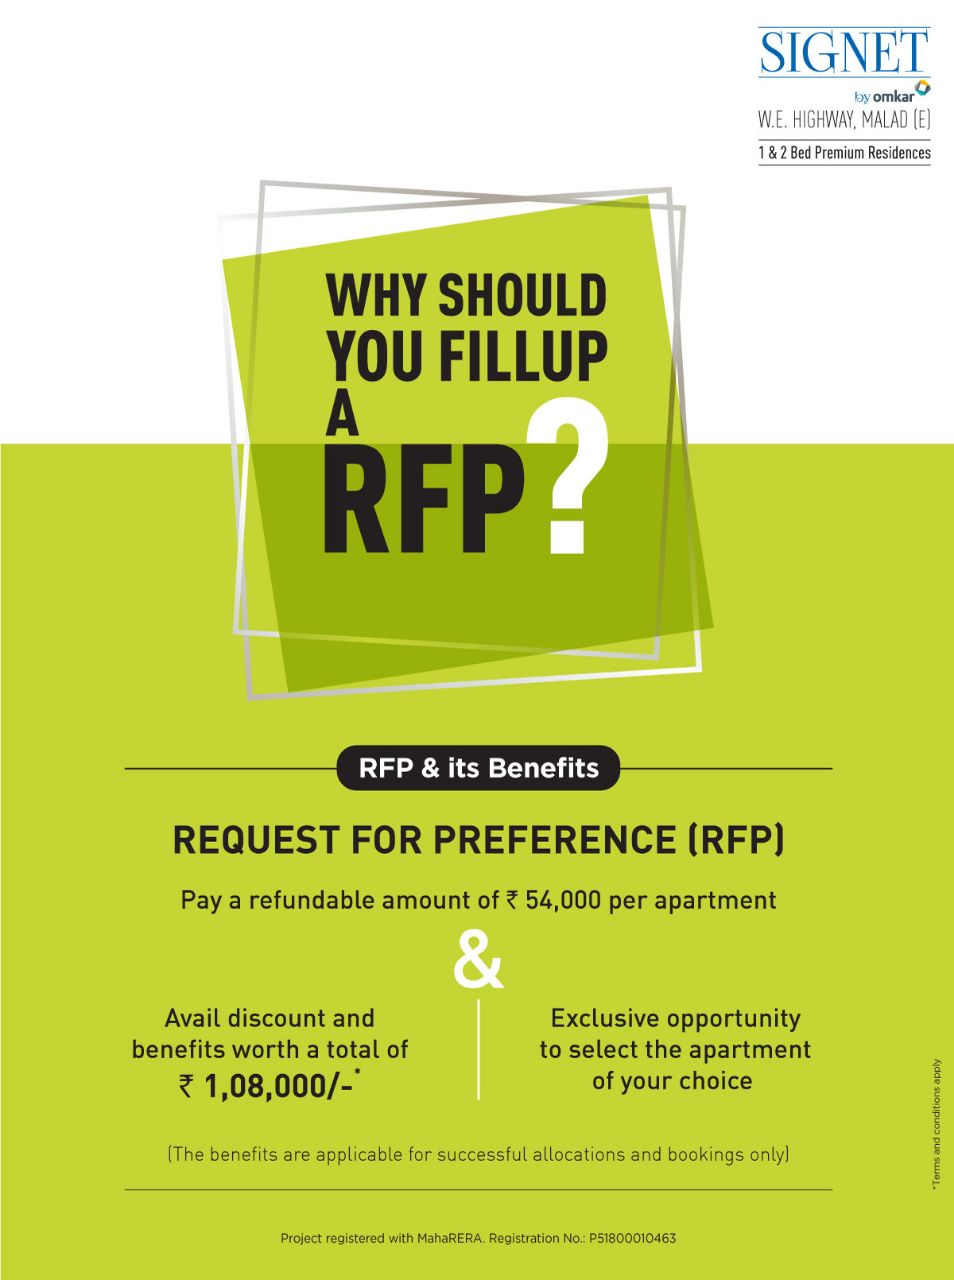 Why should you fillup a RFP at Omkar Signet, Mumbai